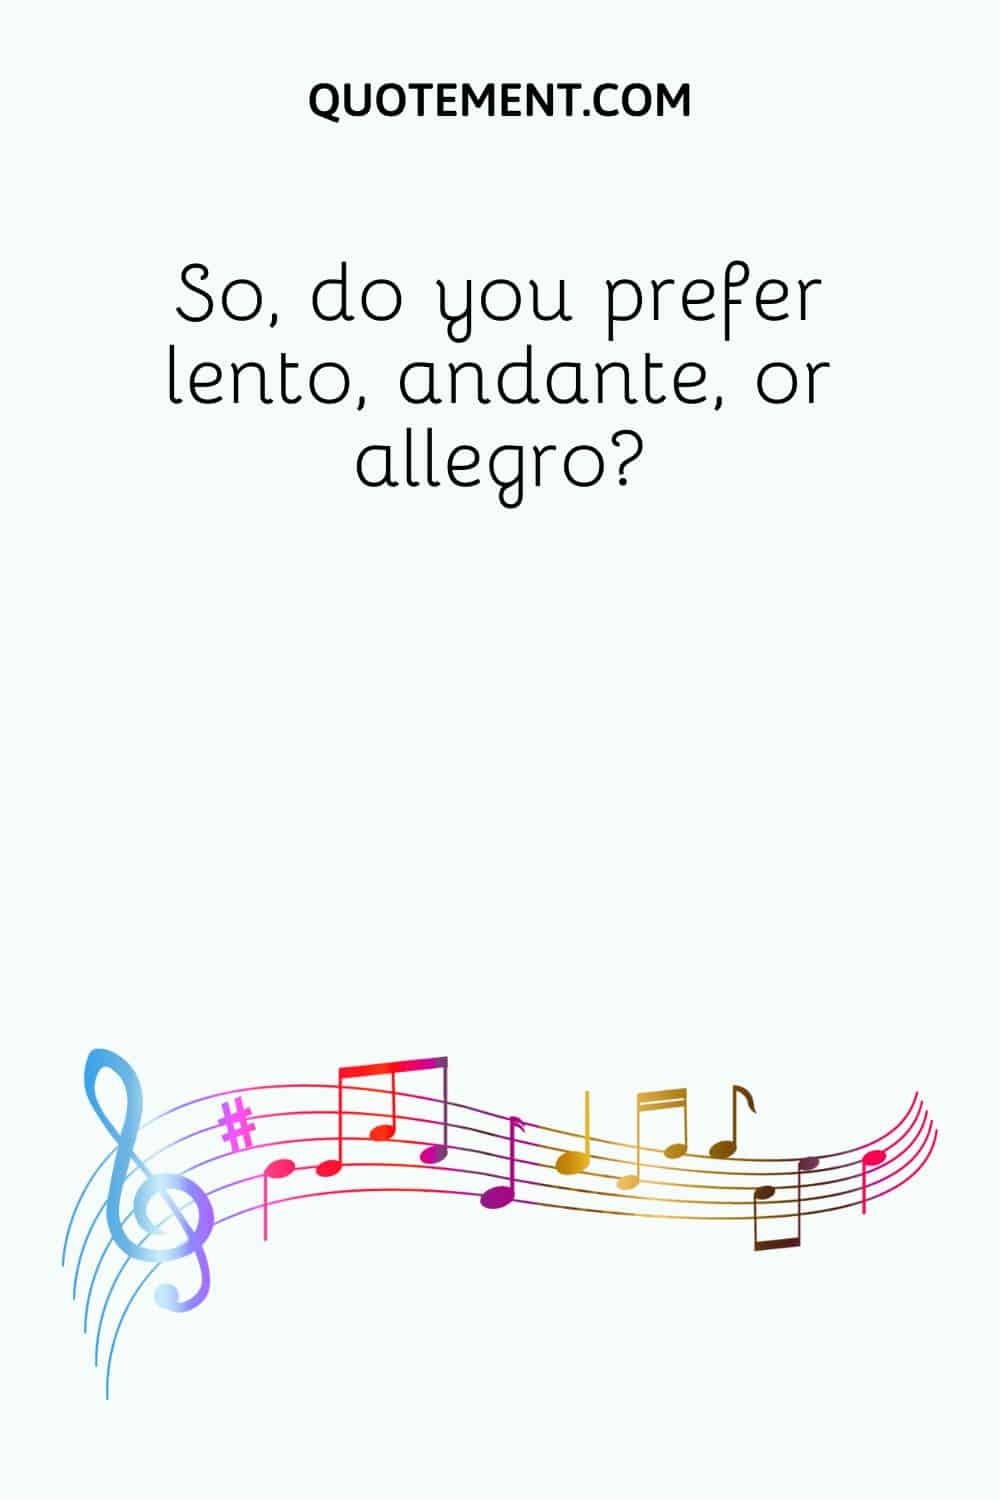 So, do you prefer lento, andante, or allegro